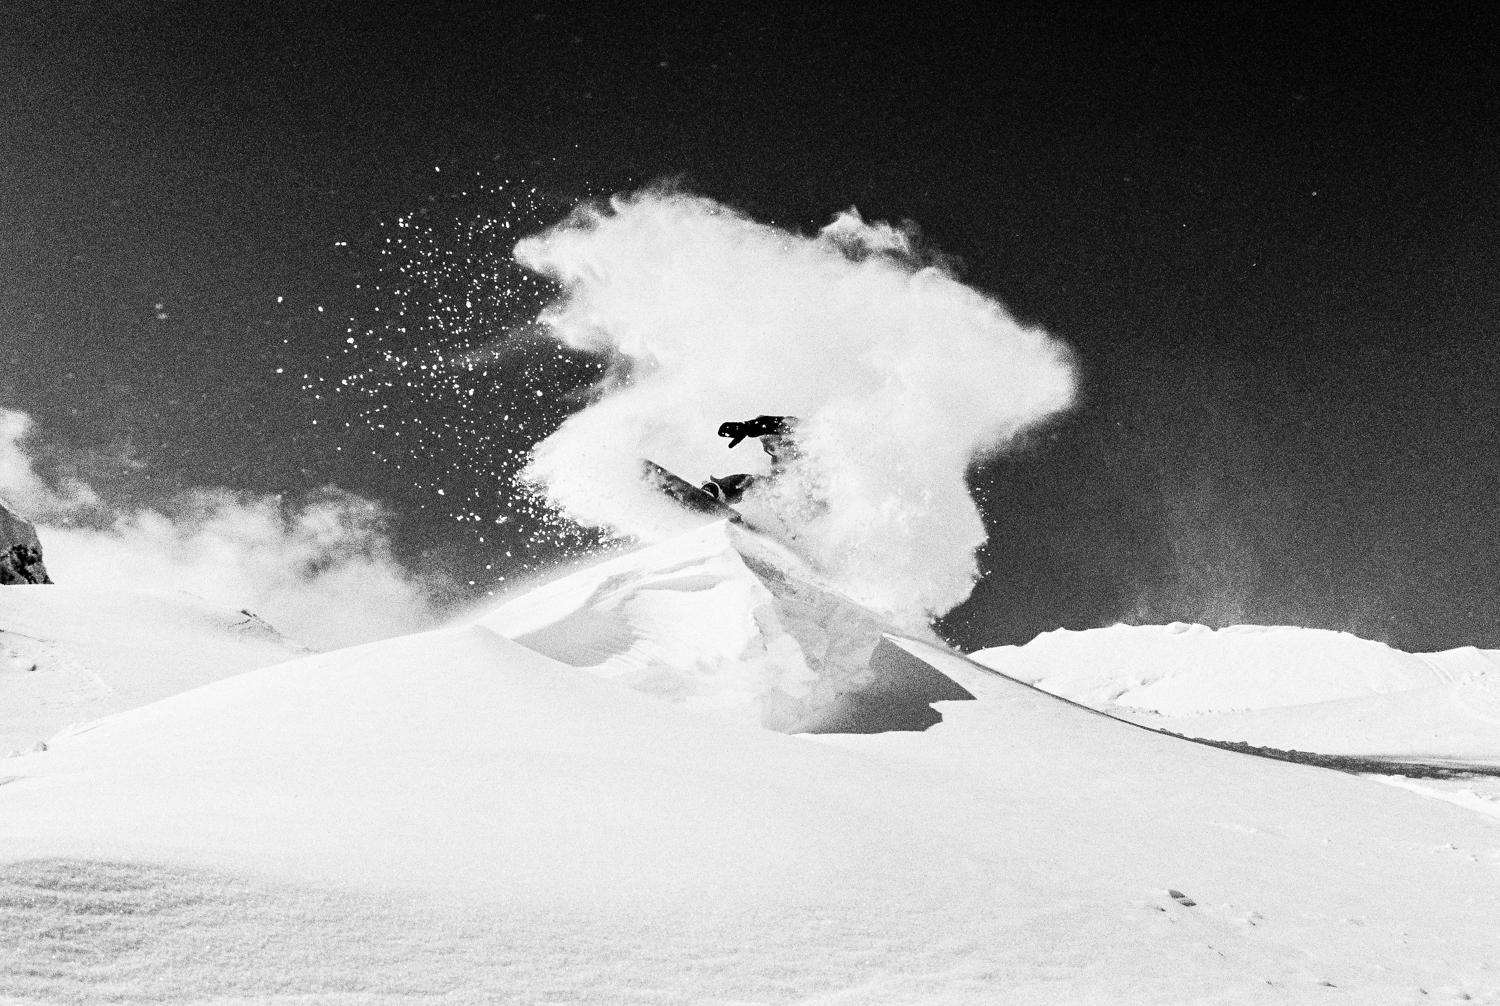 Snowdance - Mountain Snowboarding Schwarz-Weiß-Kunstfotografie